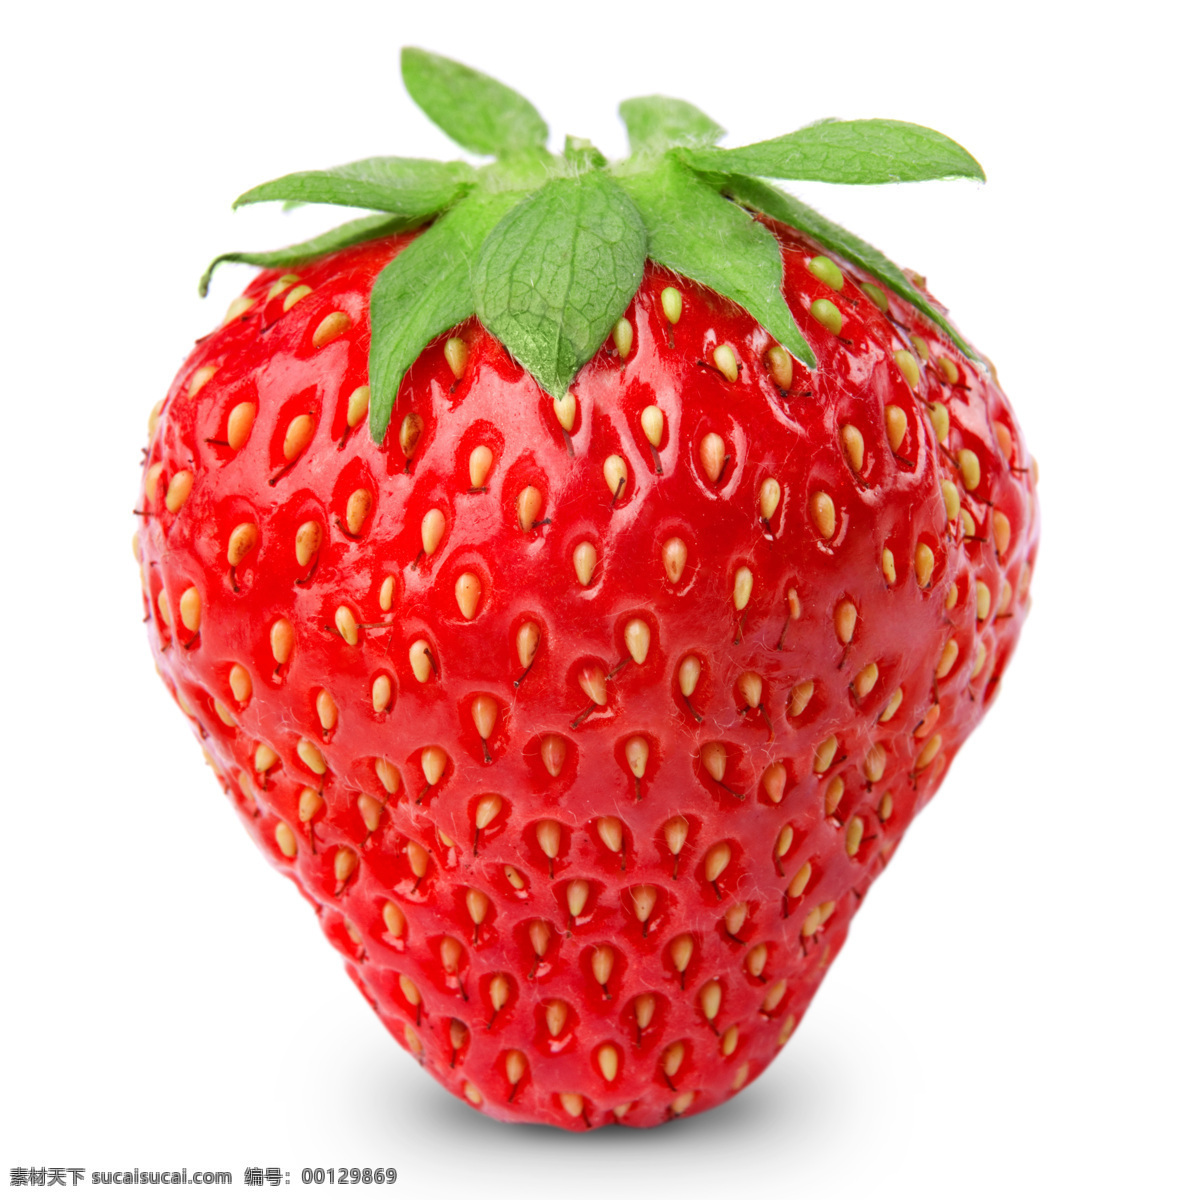 新鲜 草莓 水果 食物 蔬菜图片 餐饮美食